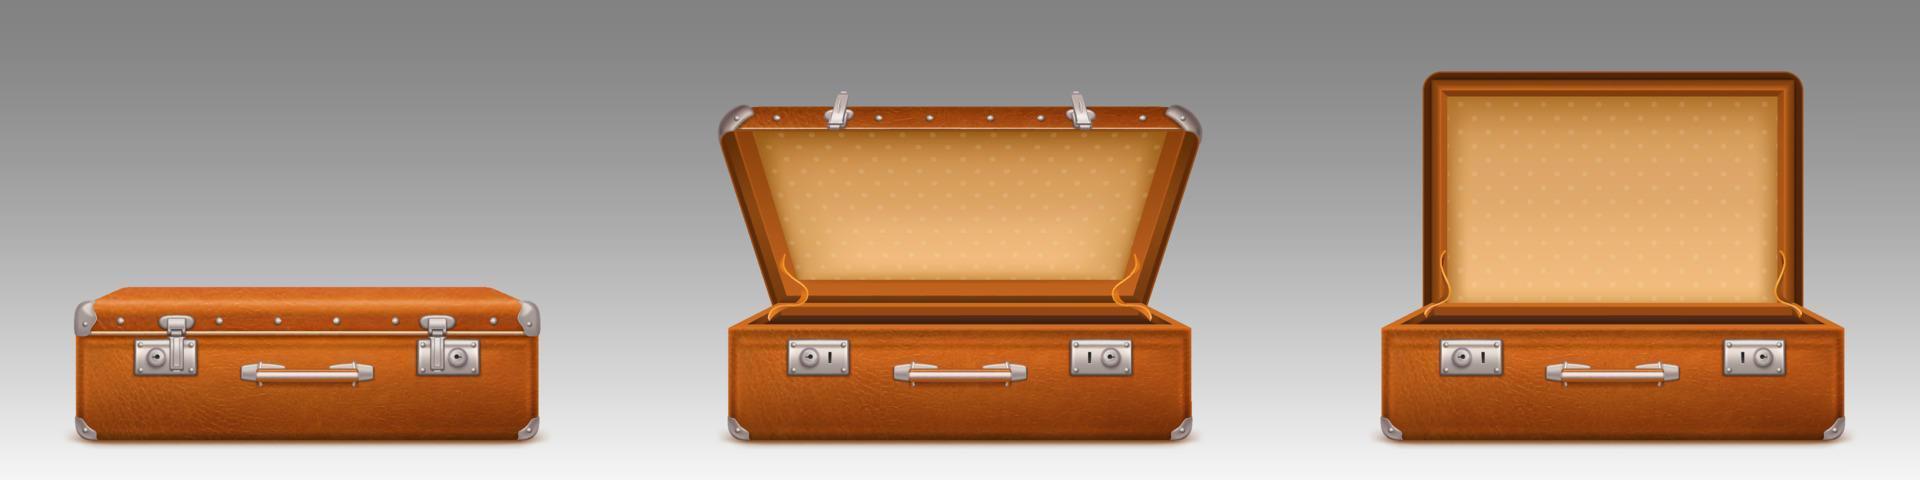 vintage koffer, offene und geschlossene aktentasche vektor